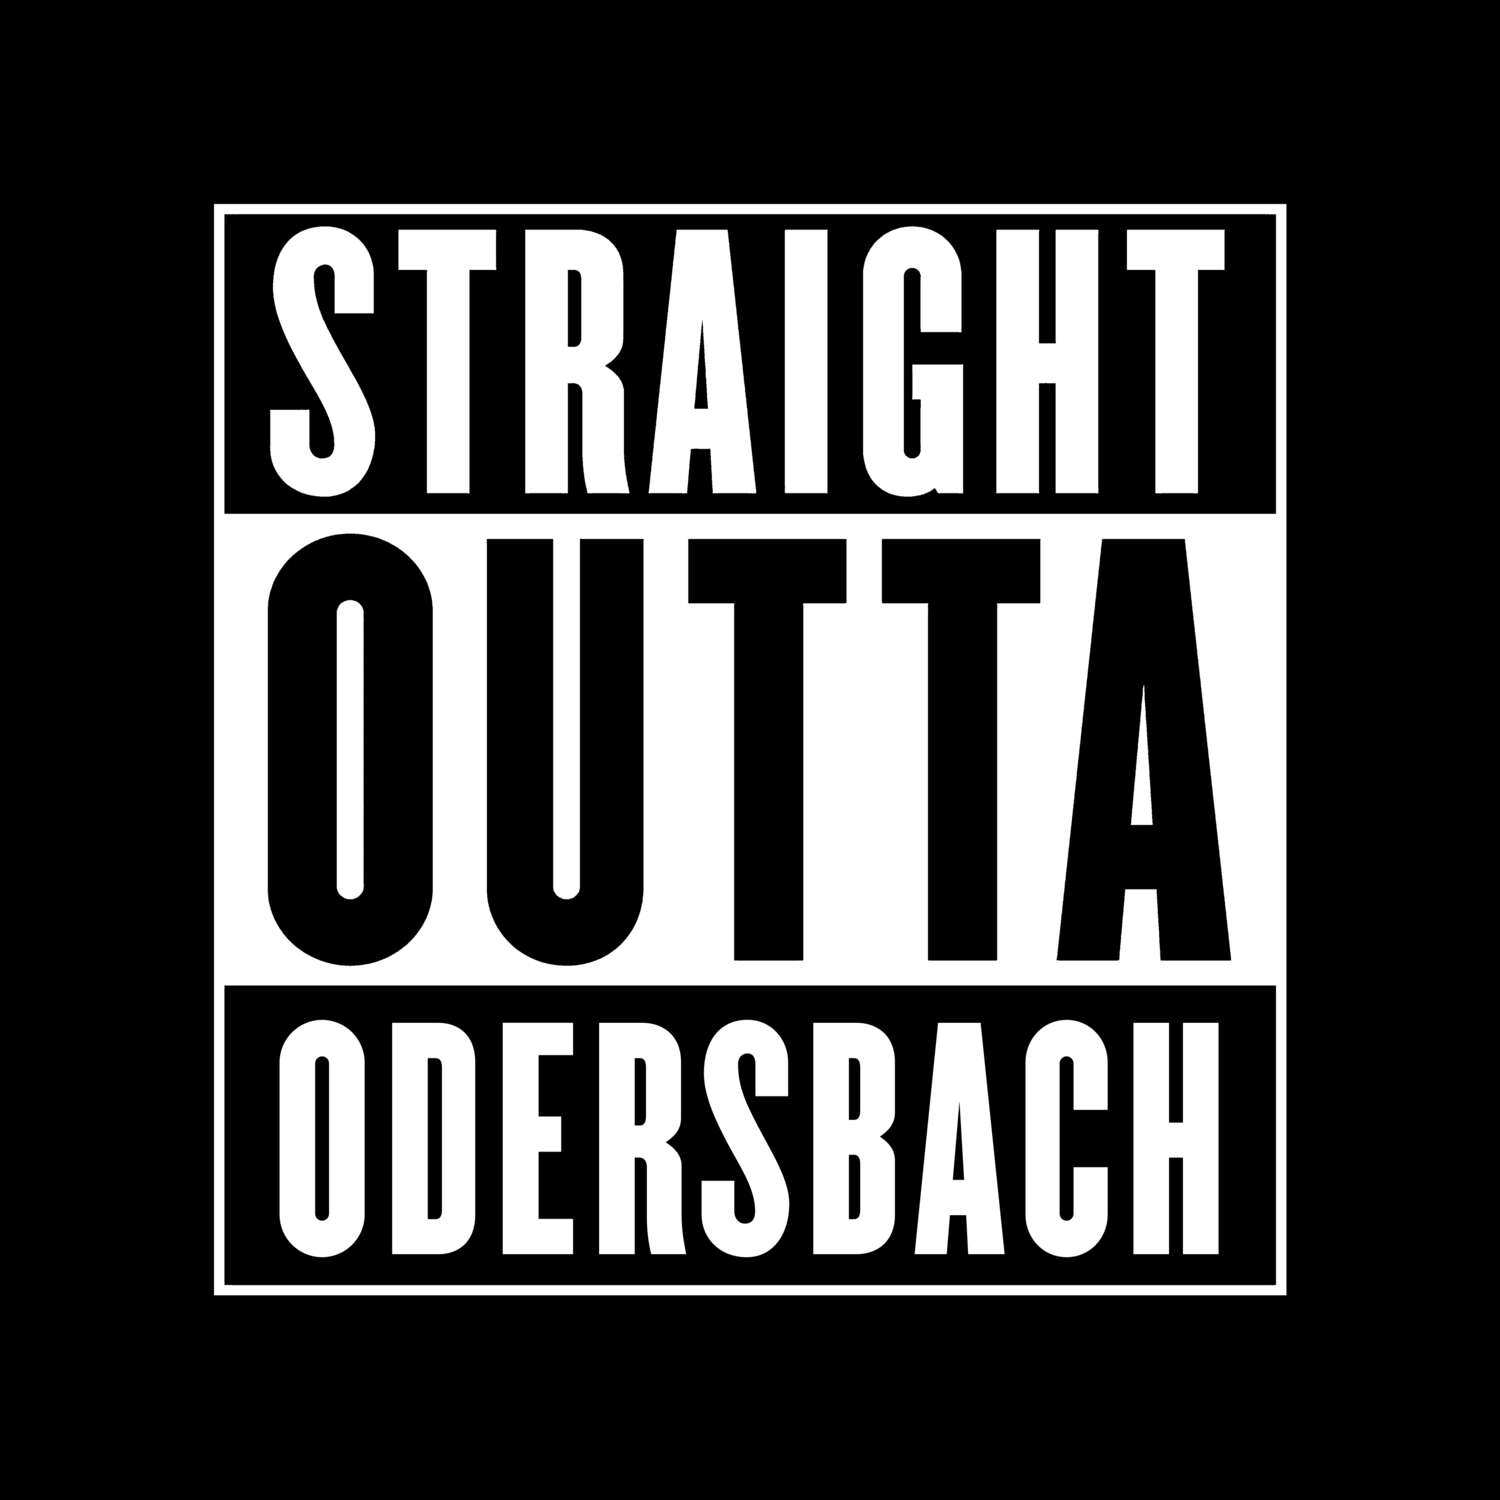 Odersbach T-Shirt »Straight Outta«